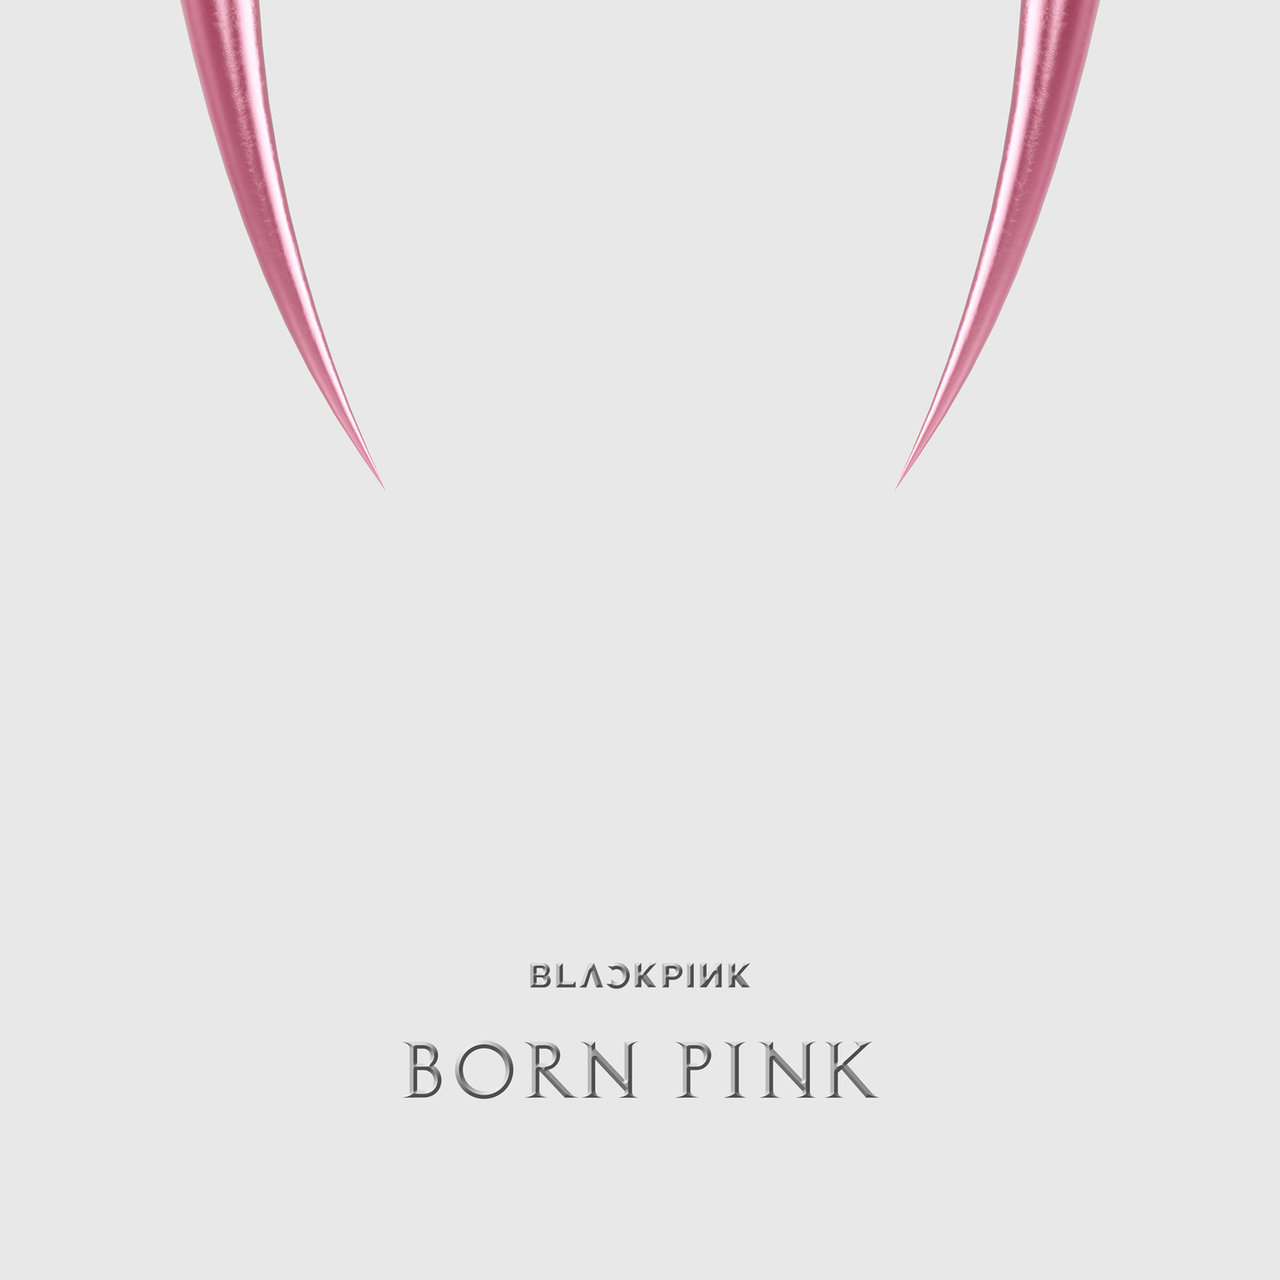 BLACKPINK BORN PINK cover artwork